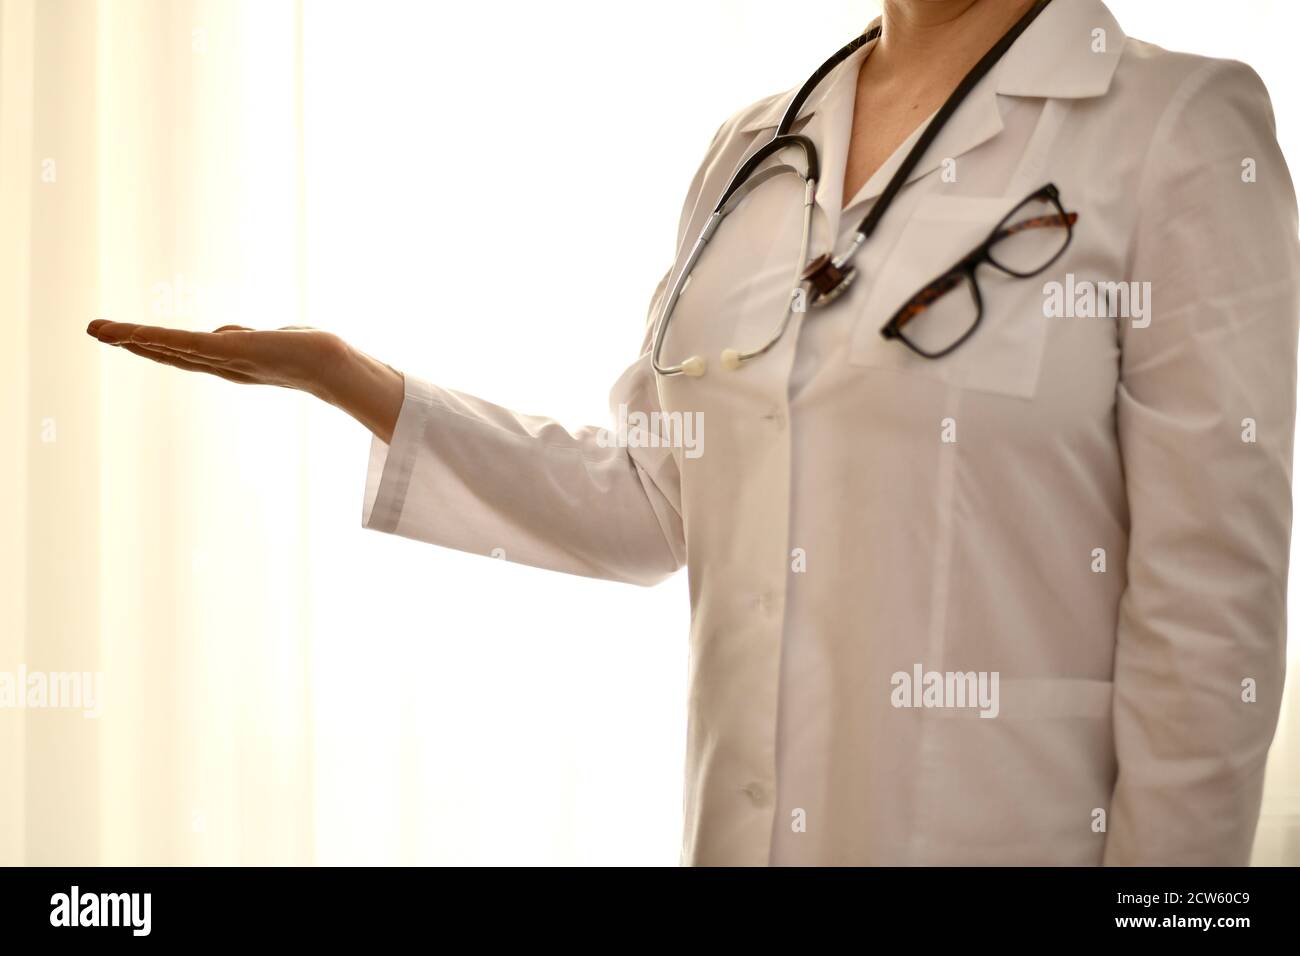 Le médecin dans une robe blanche se tient avec son bras étiré et une paume vide montrant quoi que ce soit. Banque D'Images